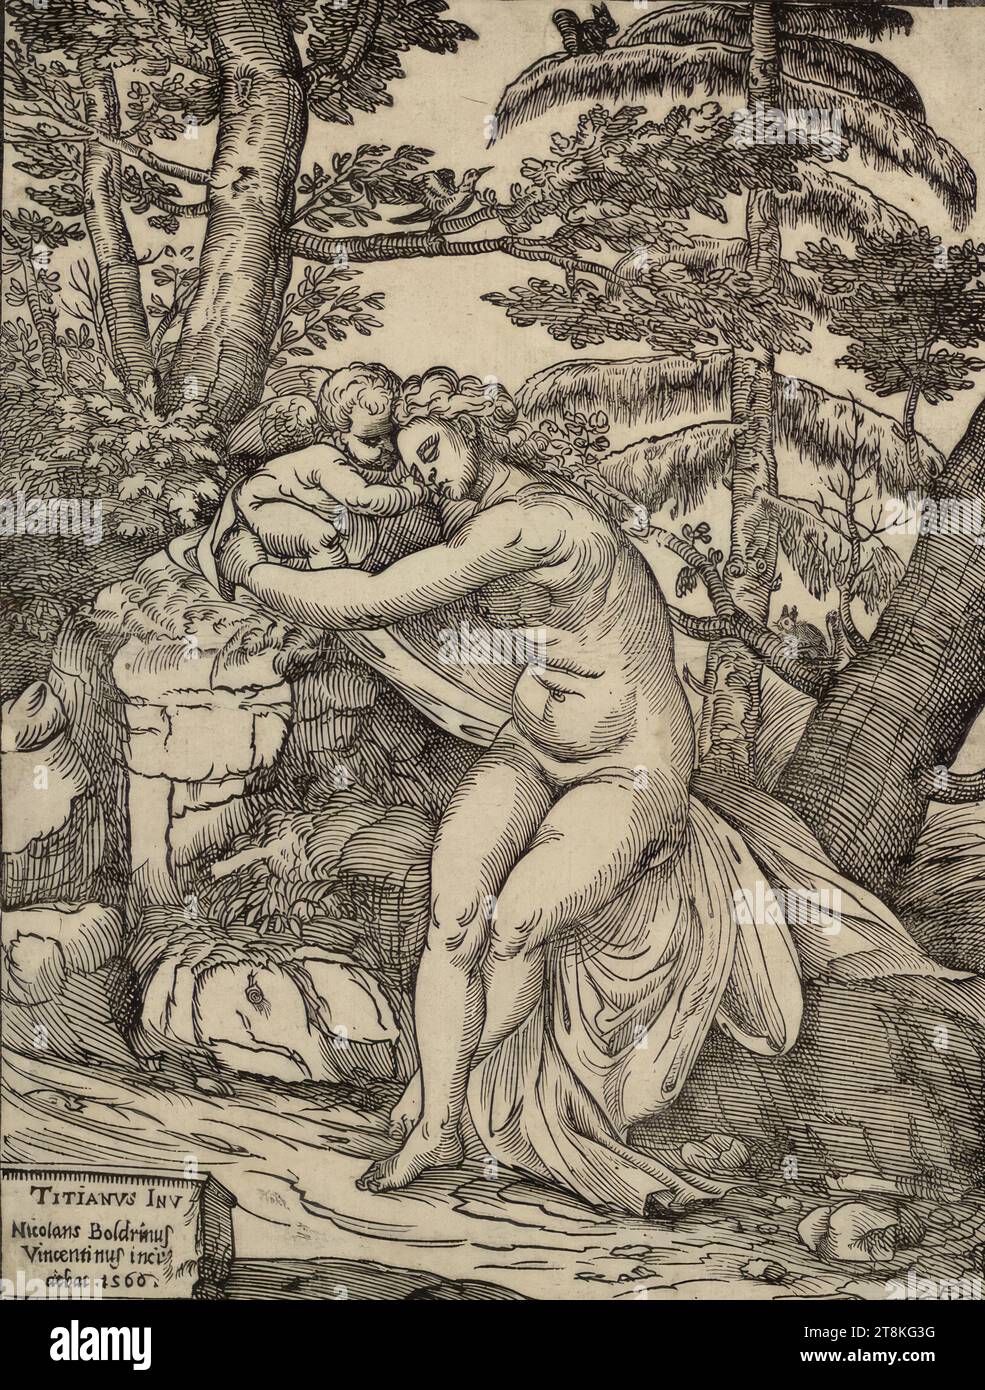 Vénus et Cupidon, Niccolò Boldrini, Italien, adulte 1540/1549, /1566 - 1566, 1566, impression, gravure sur bois Banque D'Images